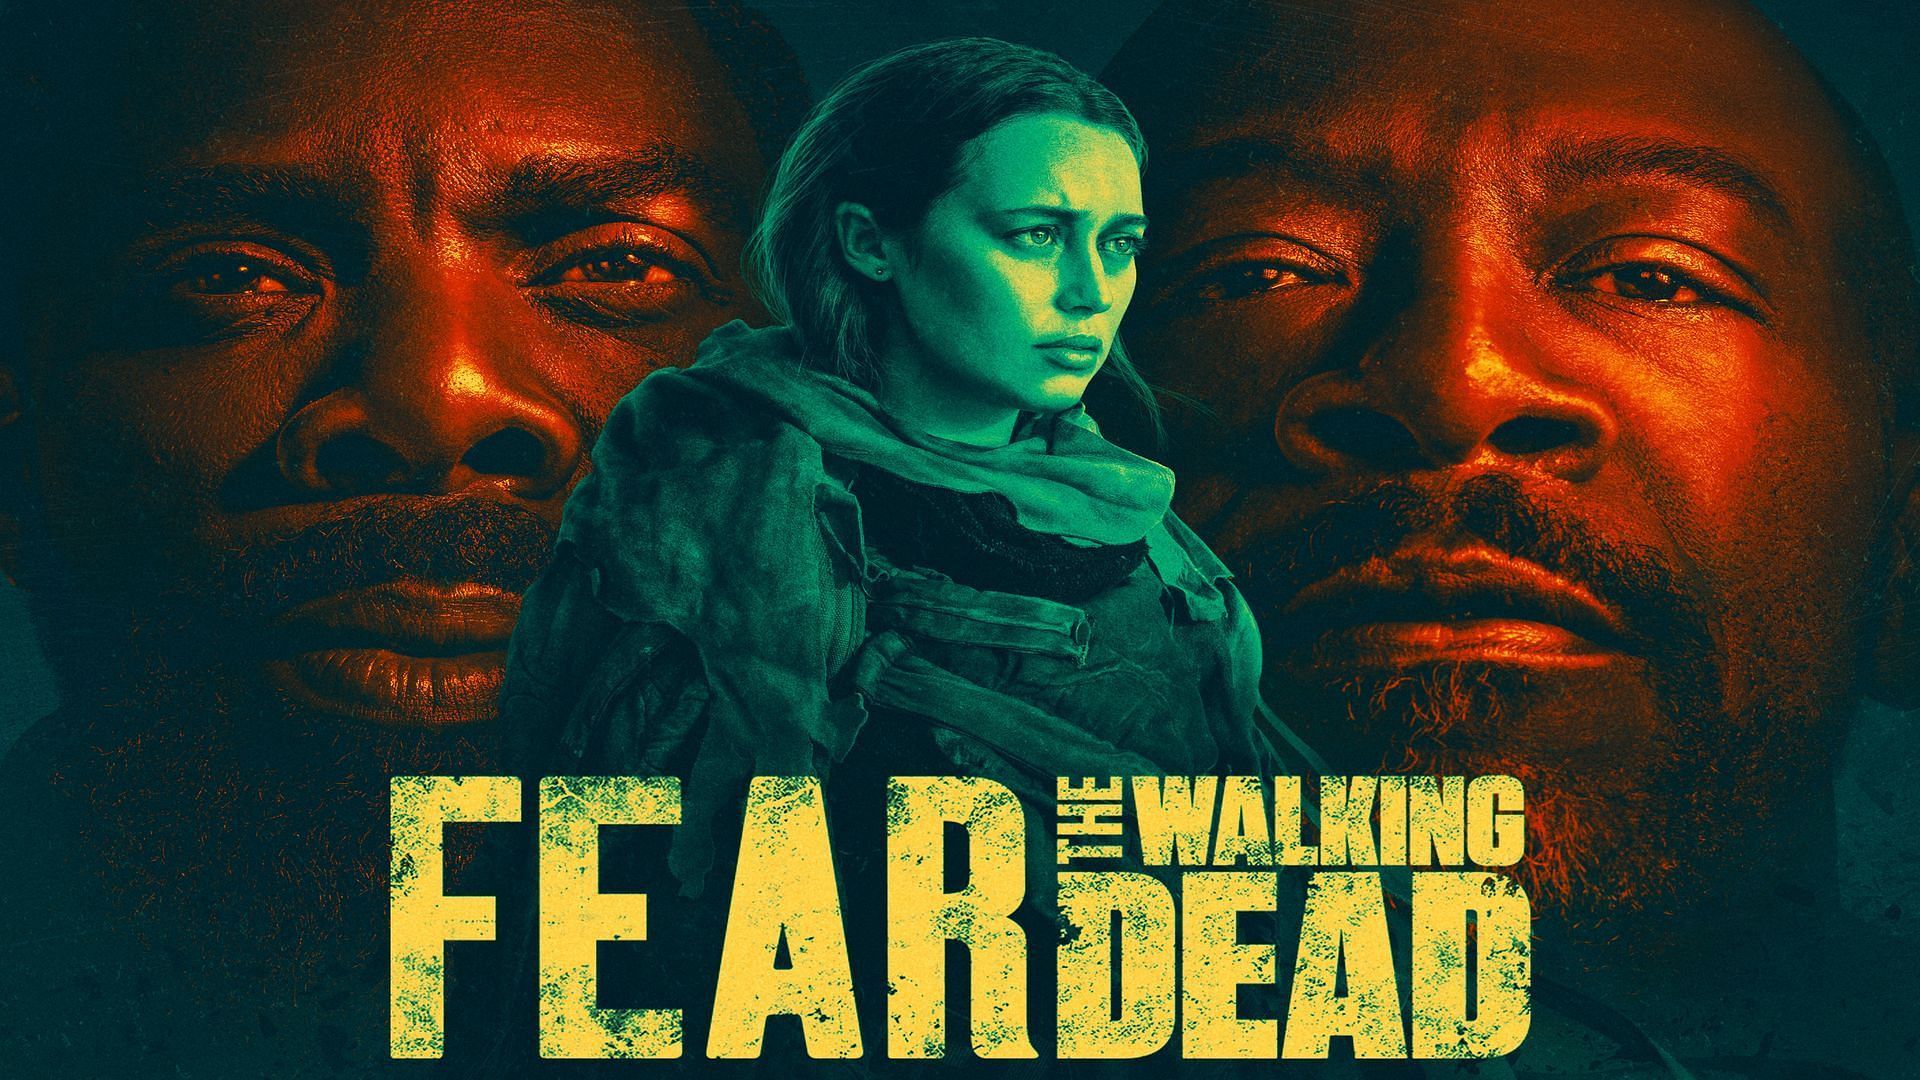 the walking dead season 4 finale poster